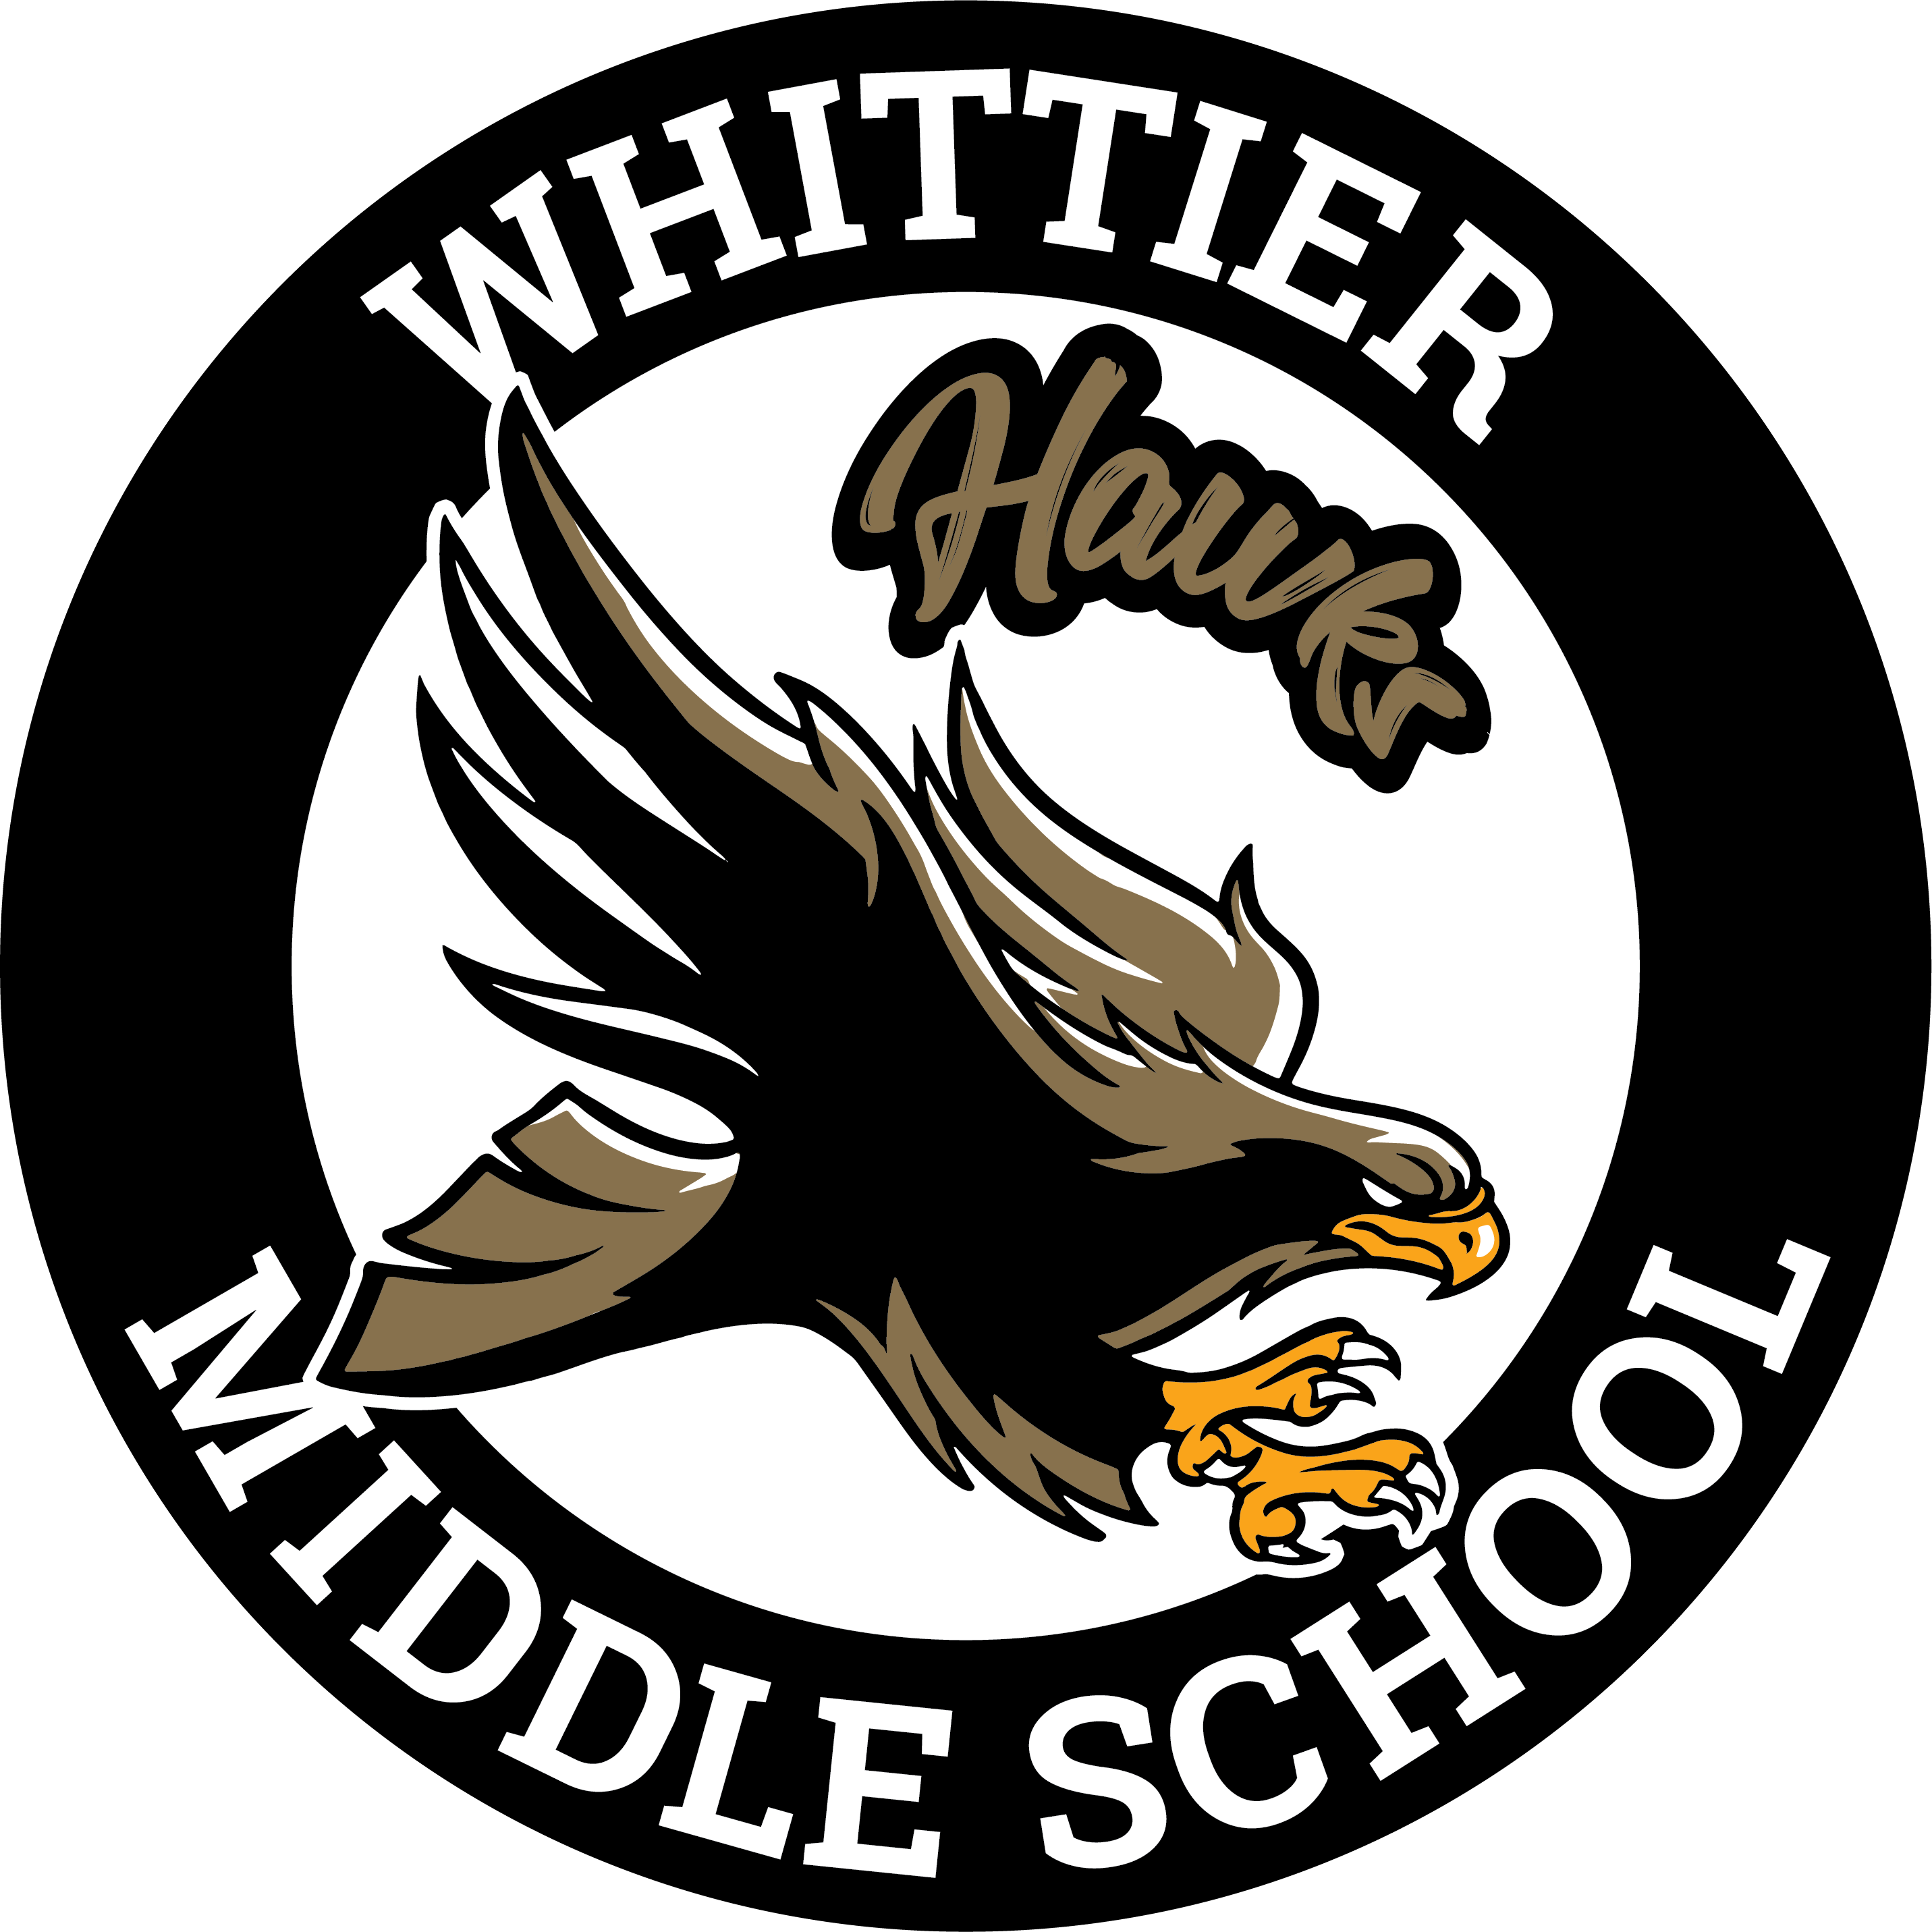 Whittier MS